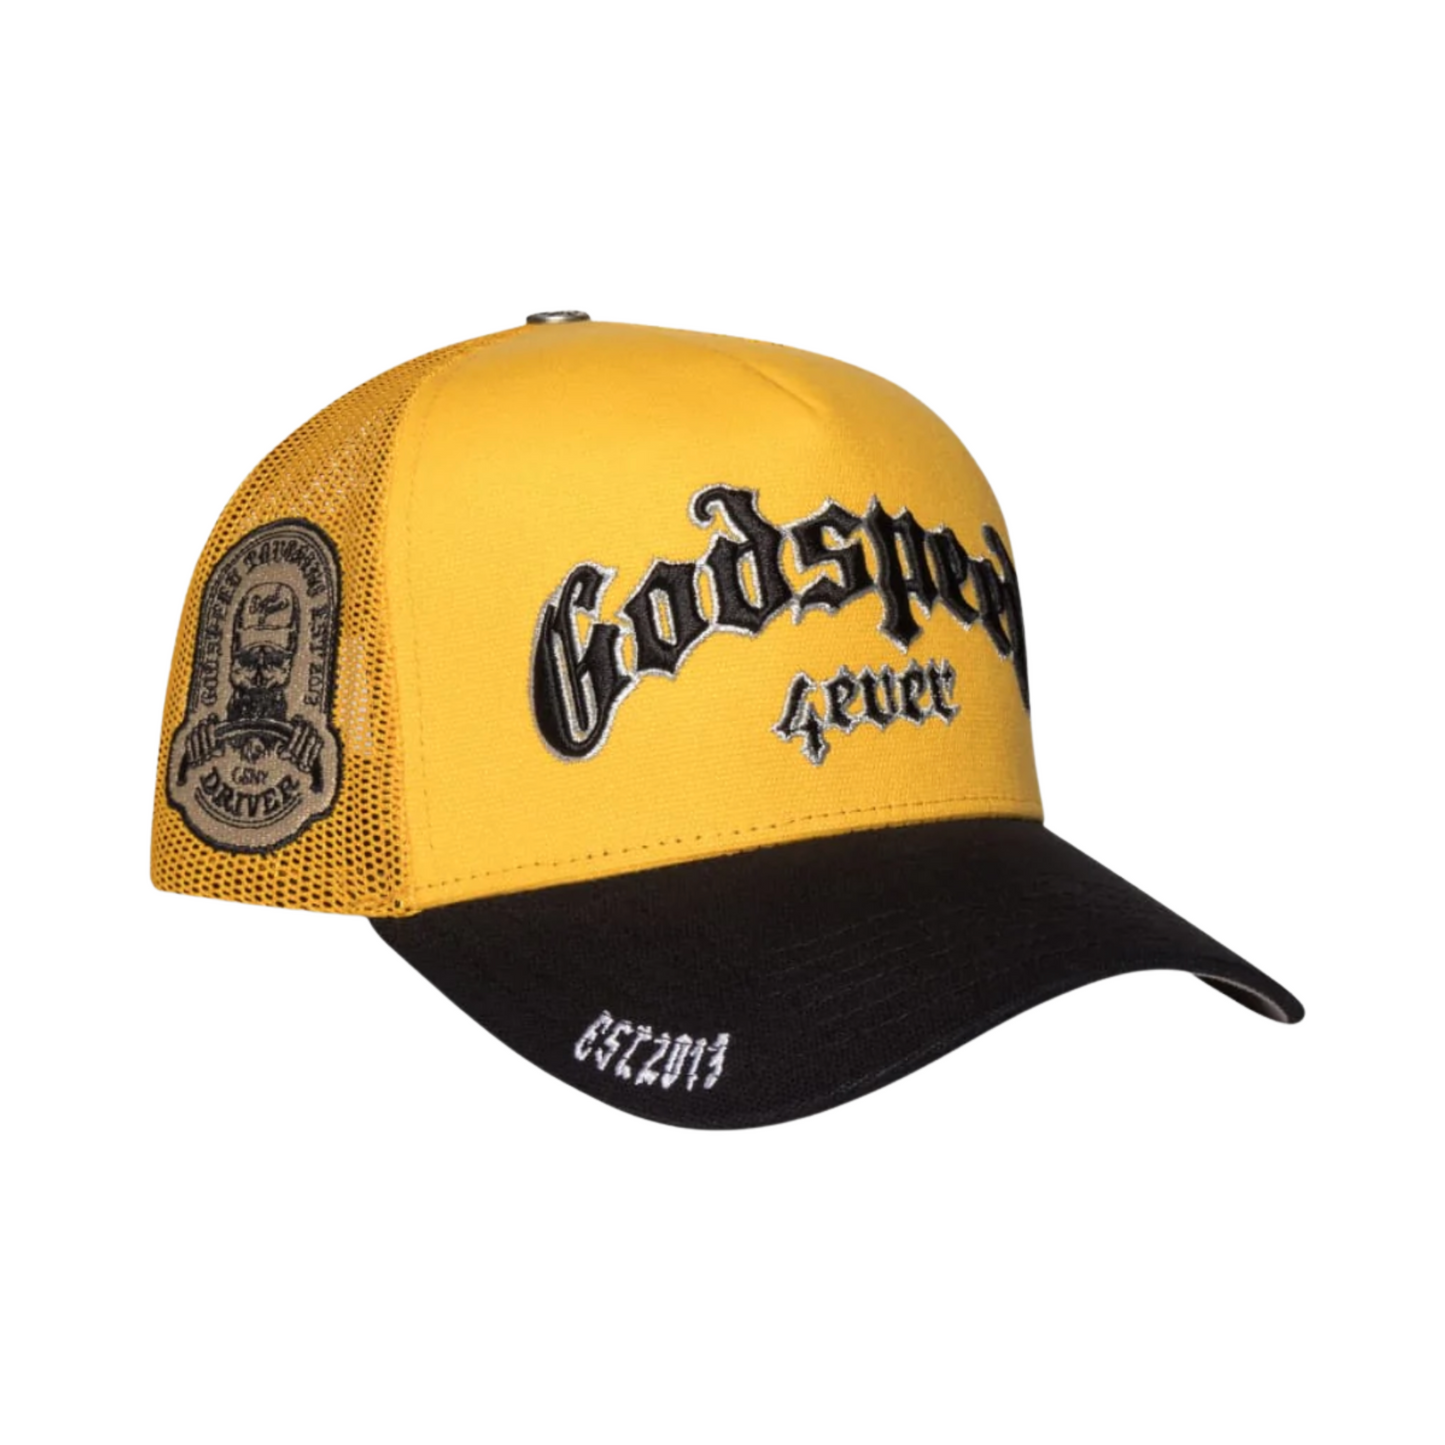 Godspeed Forever Trucker Hat (Yellow/Black)